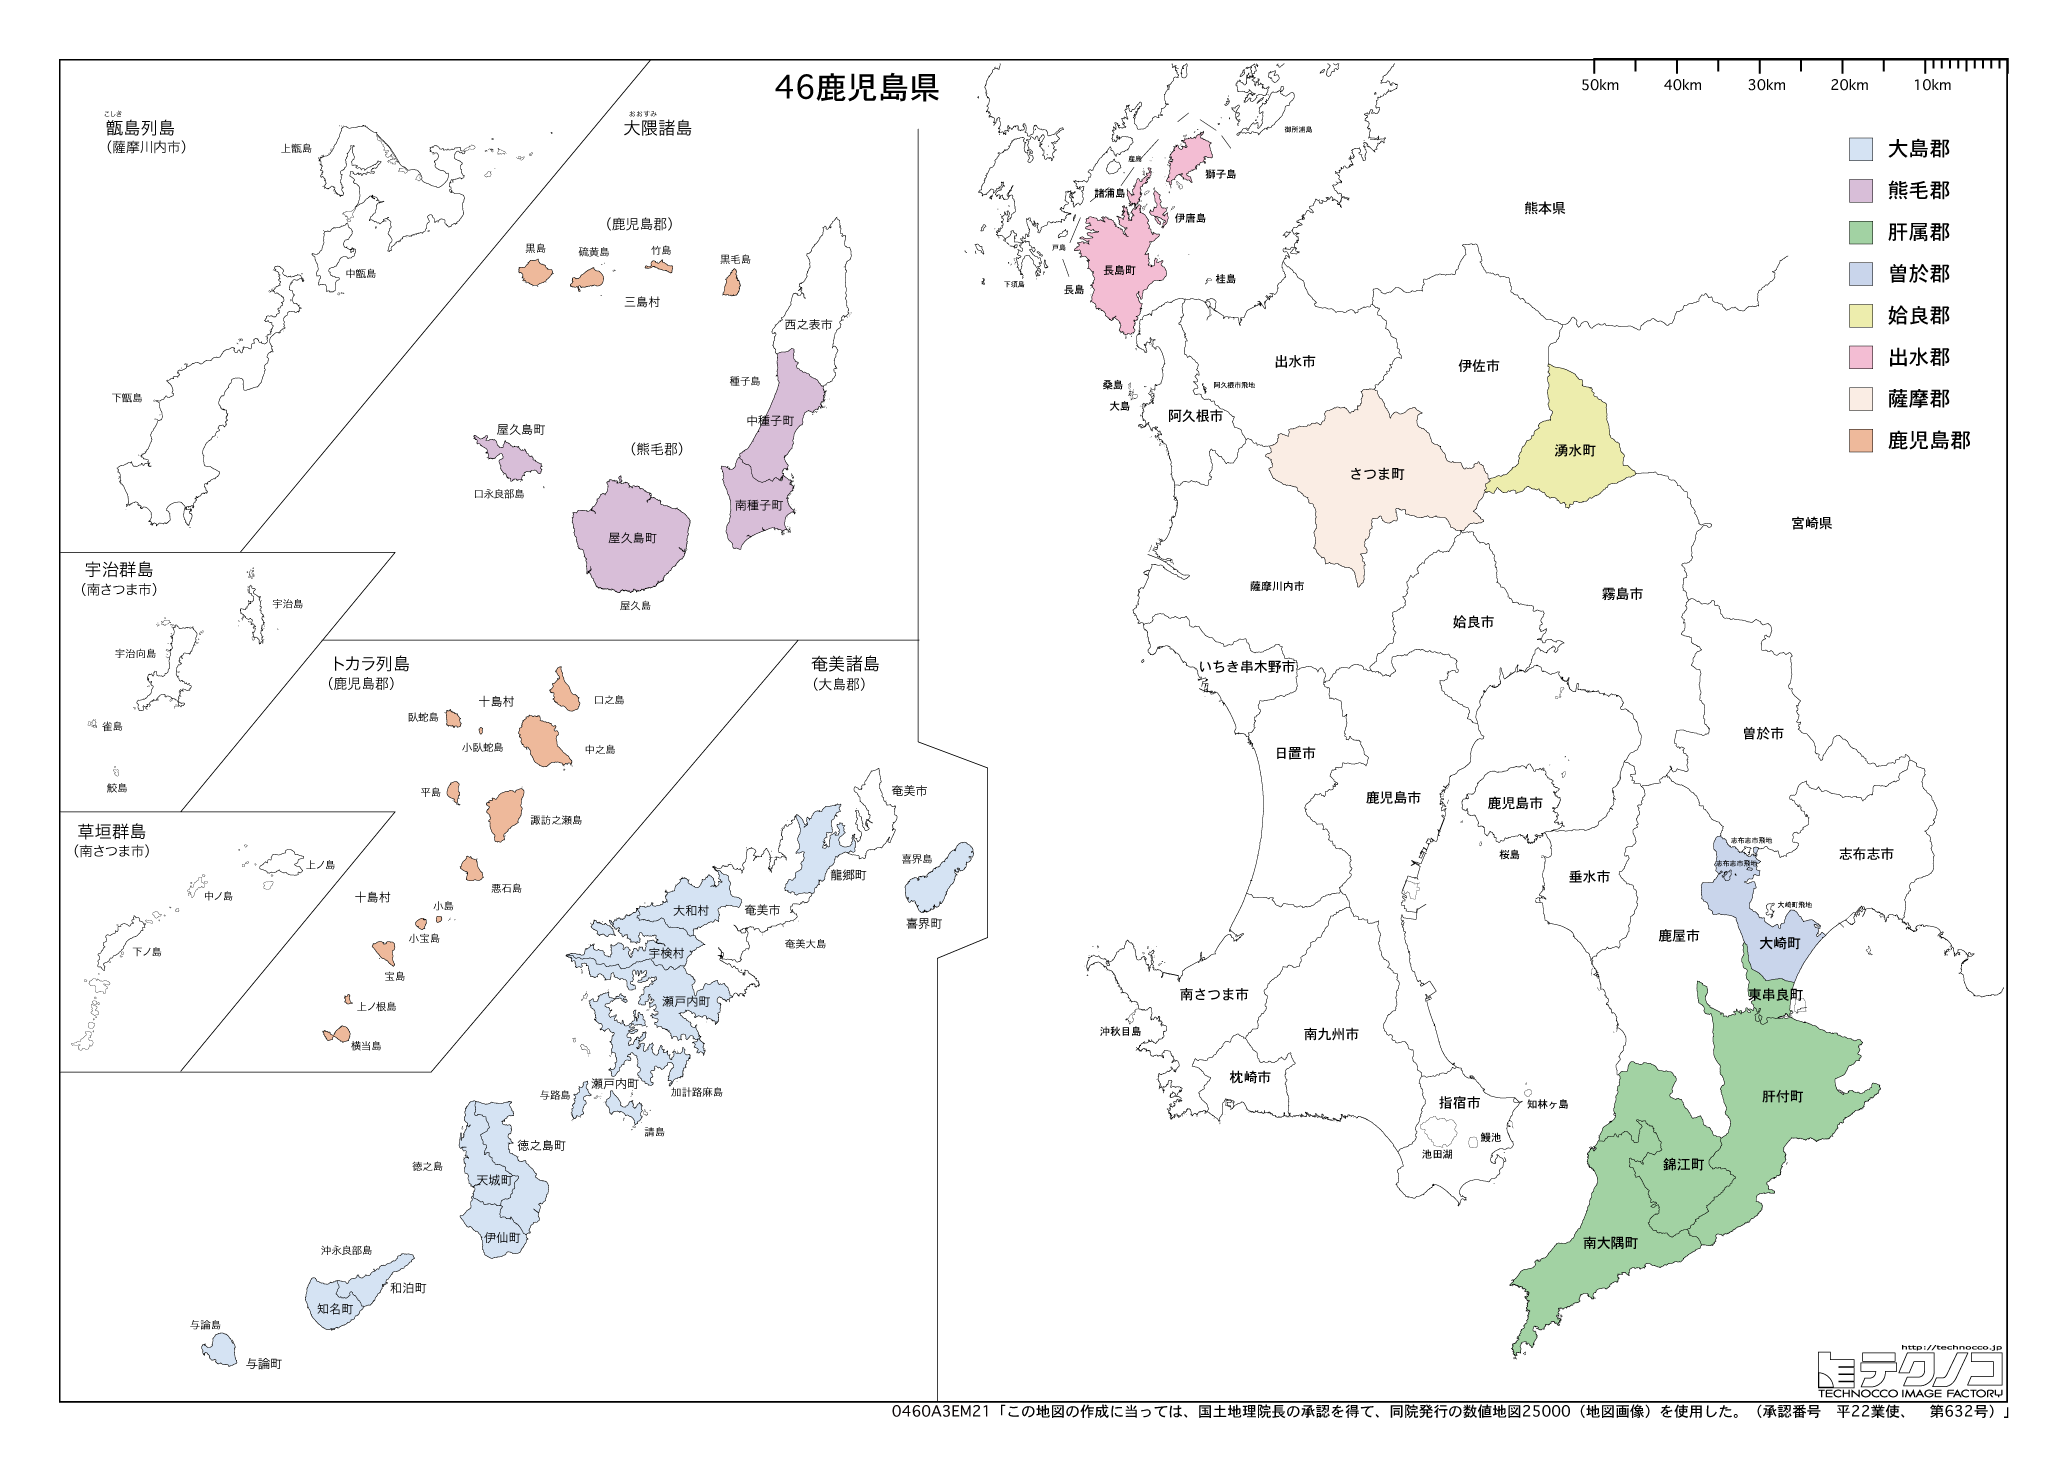 鹿児島県の白地図と市町村の合併情報